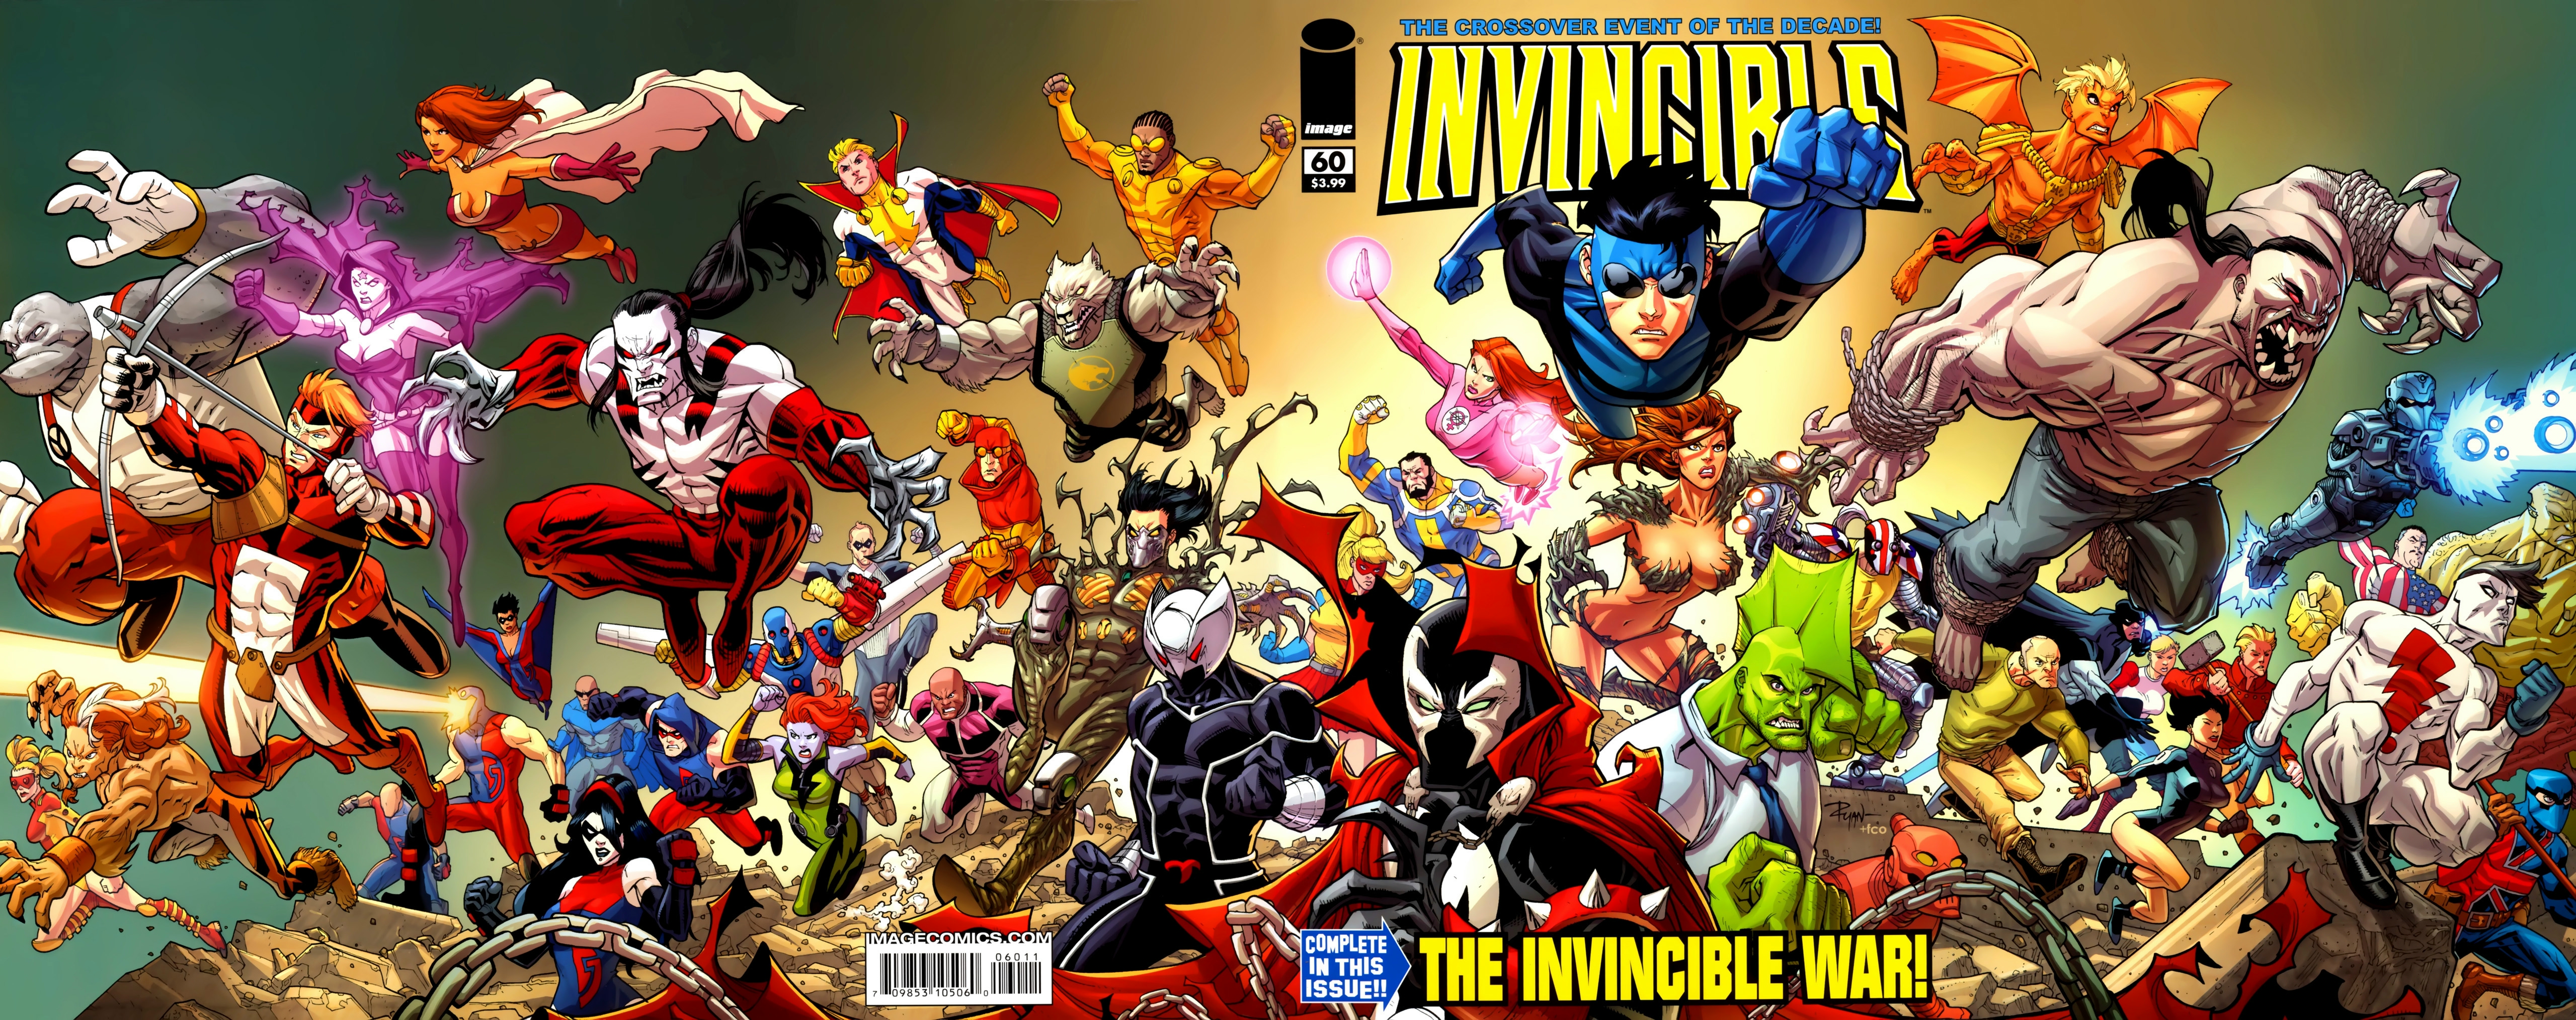 陰屍路作者的超級英雄作品－Invincible 將要推出電影